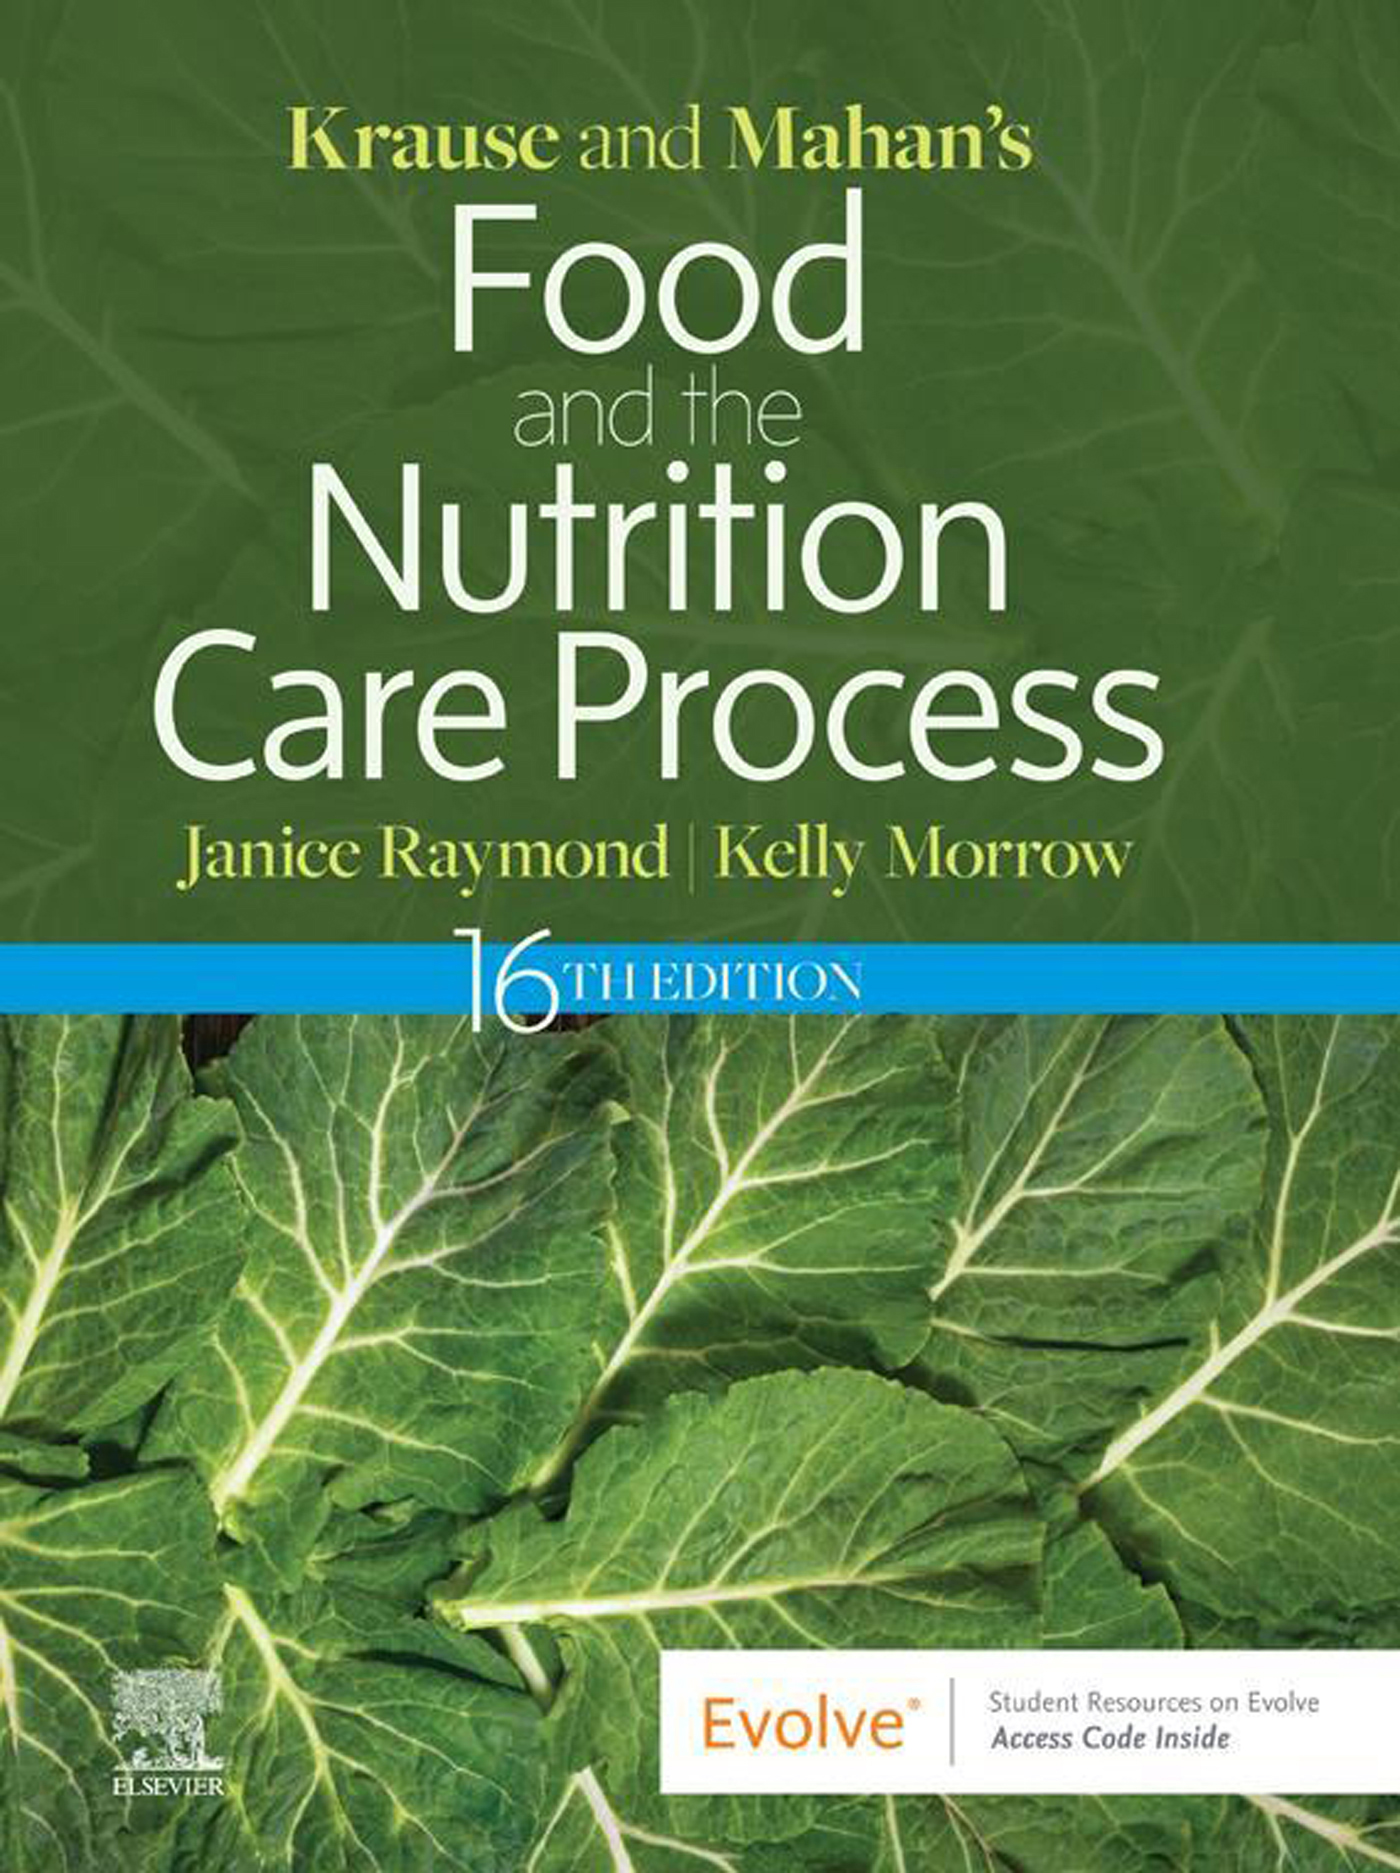 Krause and Mahanâs Food and the Nutrition Care Process, 16e, E-Book -  16th Edition